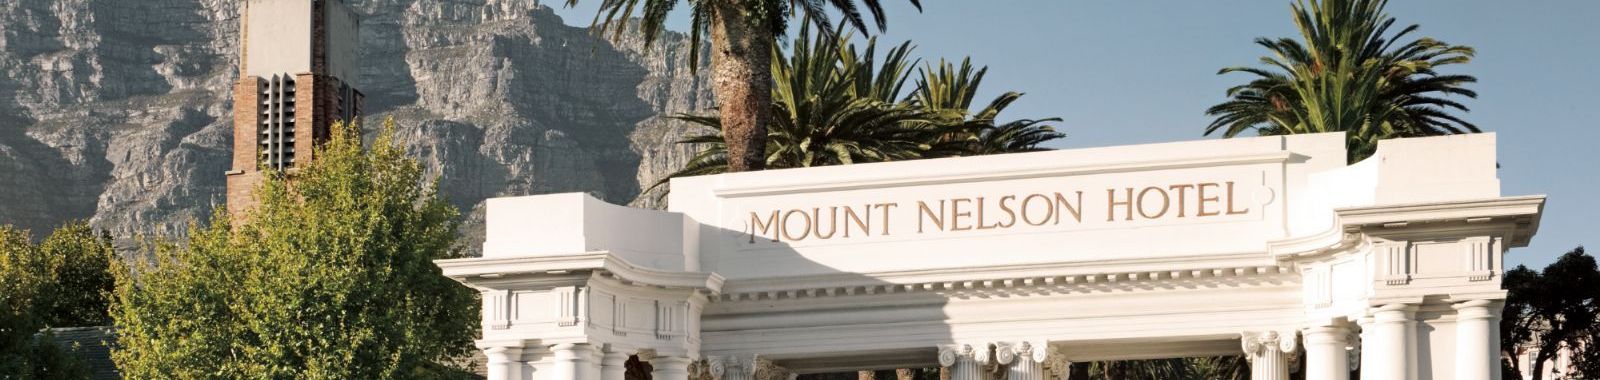 Mount Nelson, A Belmond Hotel